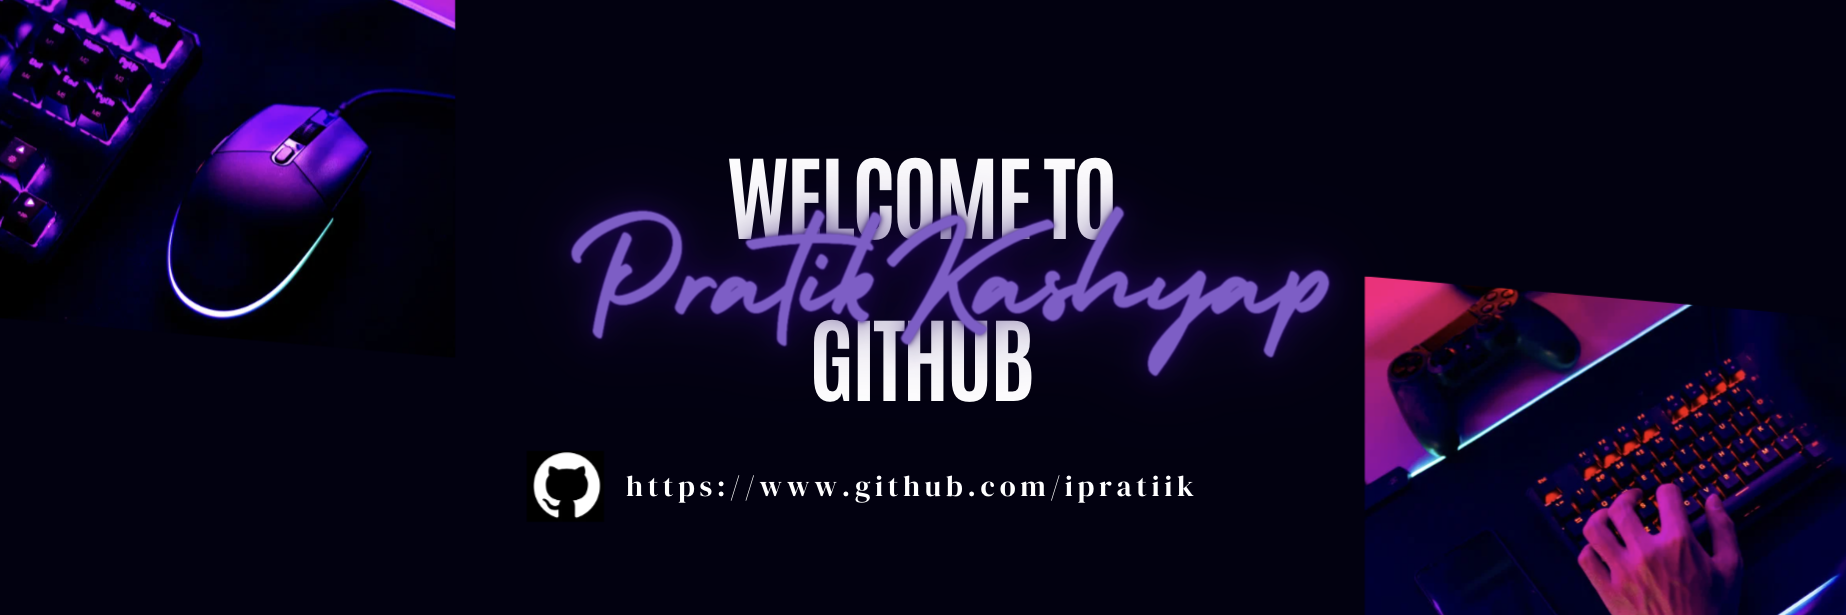 Github Cover Image